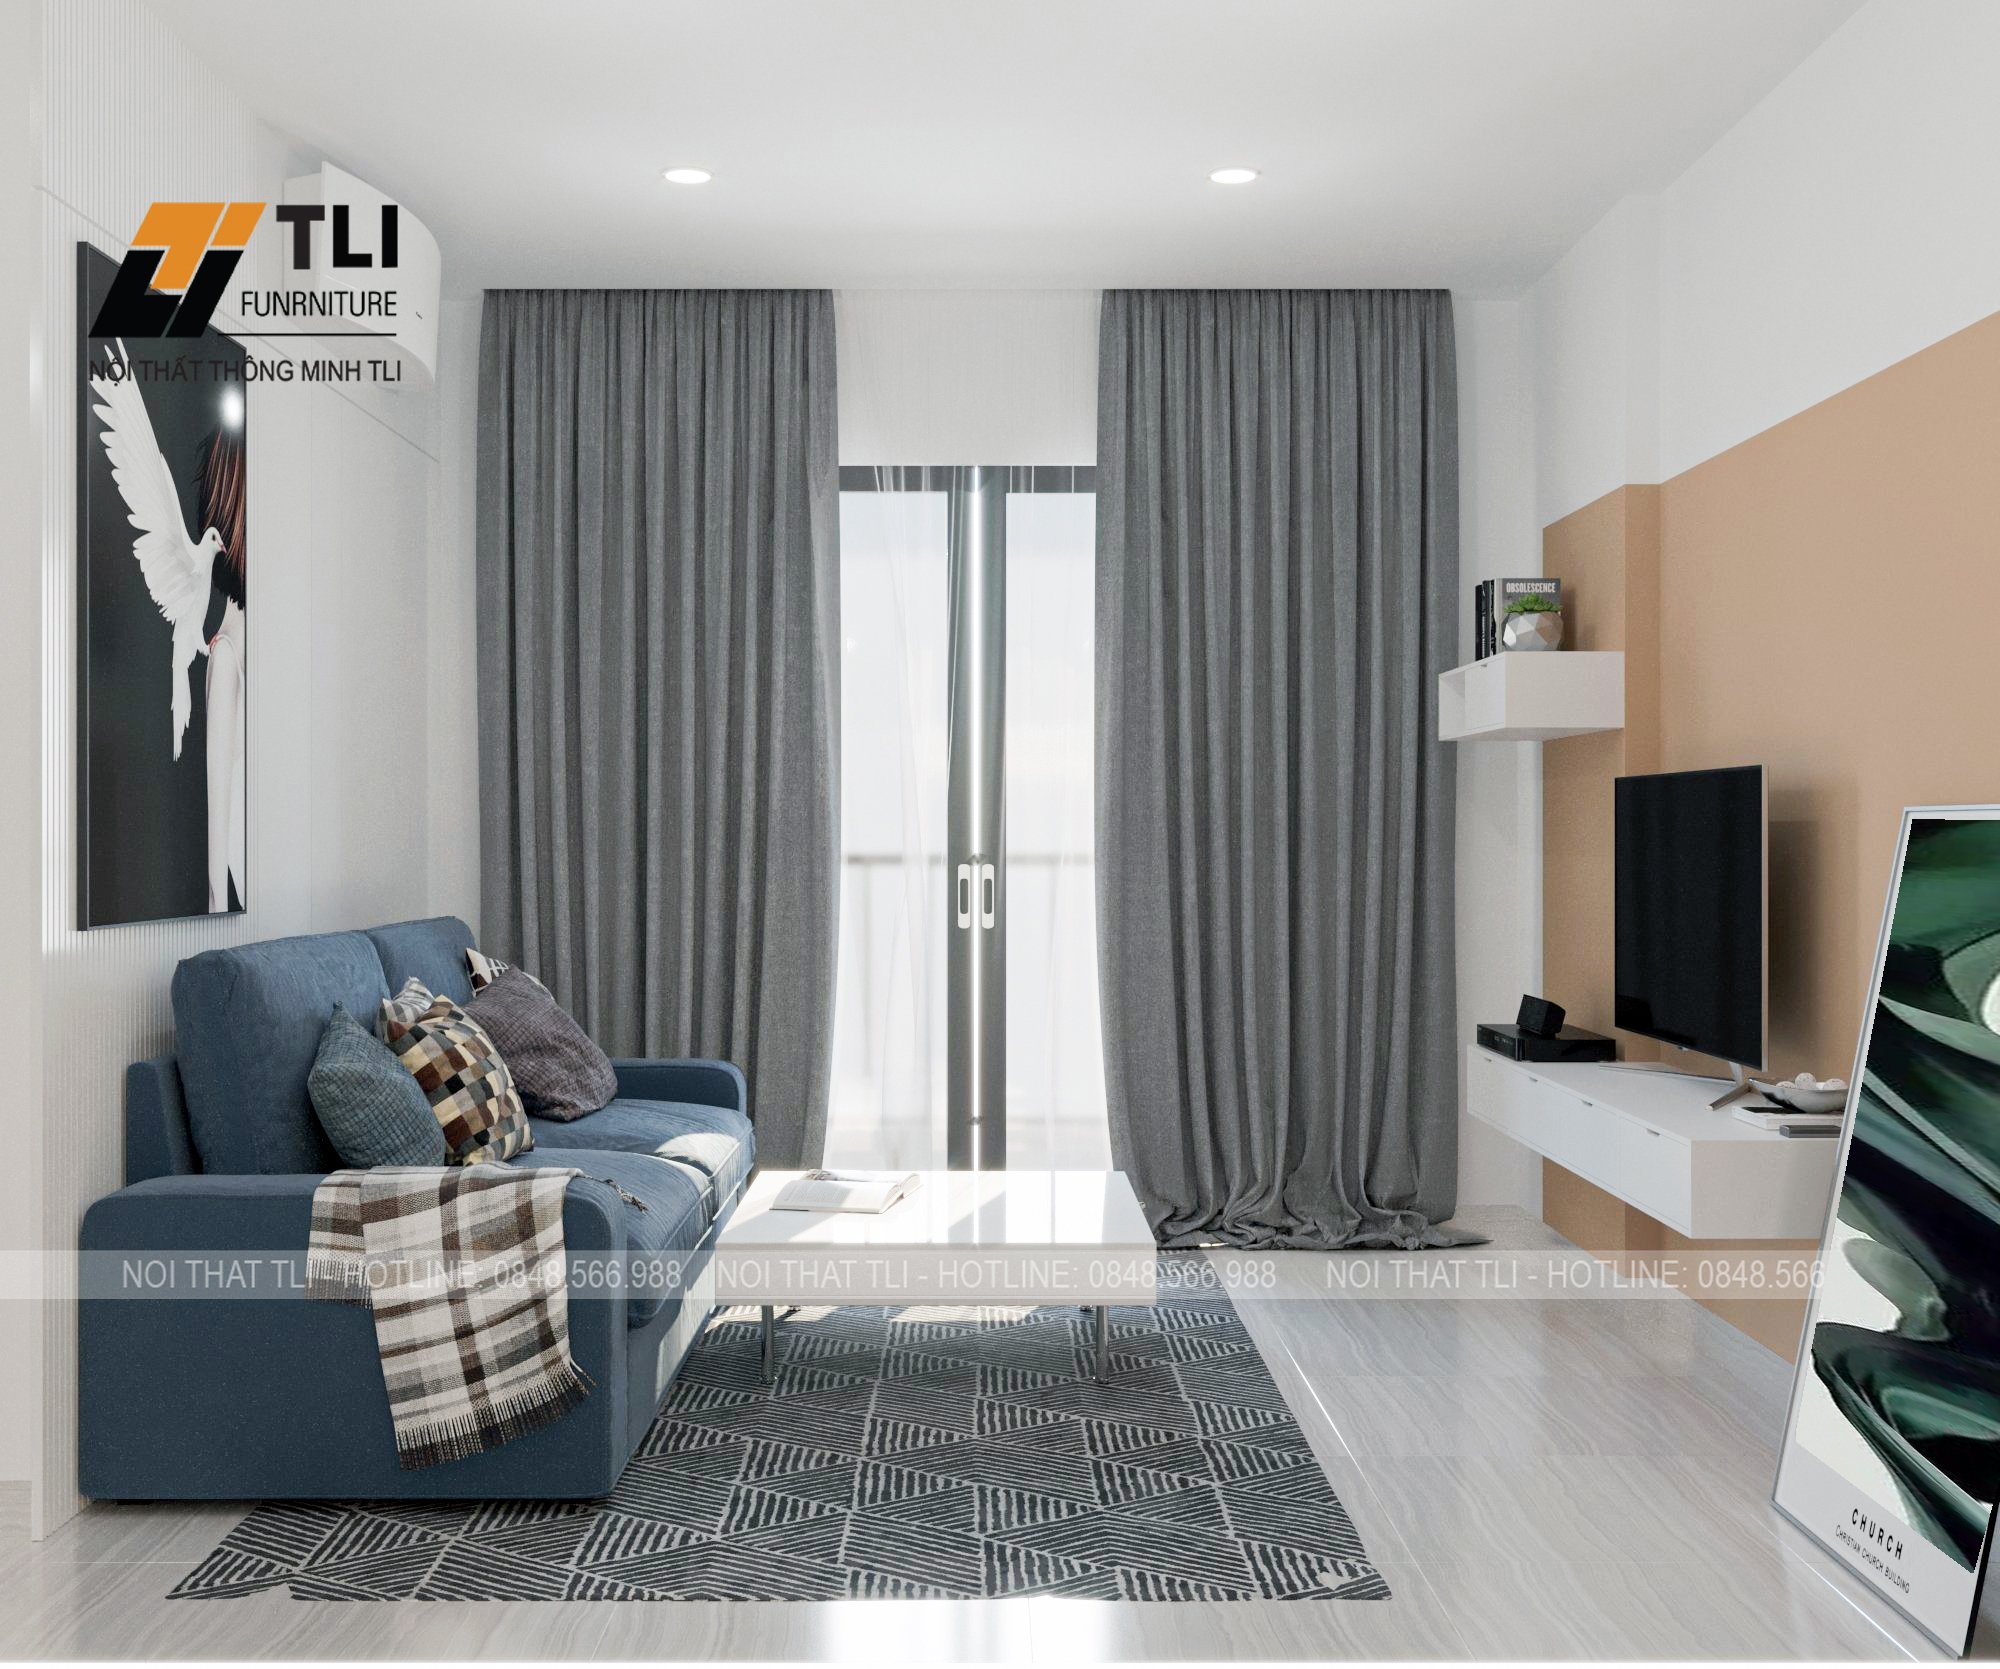 Không gian phòng khách chung cư nhỏ có thể là thử thách lớn đối với thiết kế nội thất. Tuy nhiên, với những tips thiết kế phù hợp, bạn hoàn toàn có thể chọn lựa và tối ưu diện tích để tạo nên không gian sống tuyệt vời cho gia đình mình. Hãy cùng tìm hiểu và cập nhật những tips thiết kế phòng khách chung cư nhỏ đẹp qua hình ảnh.